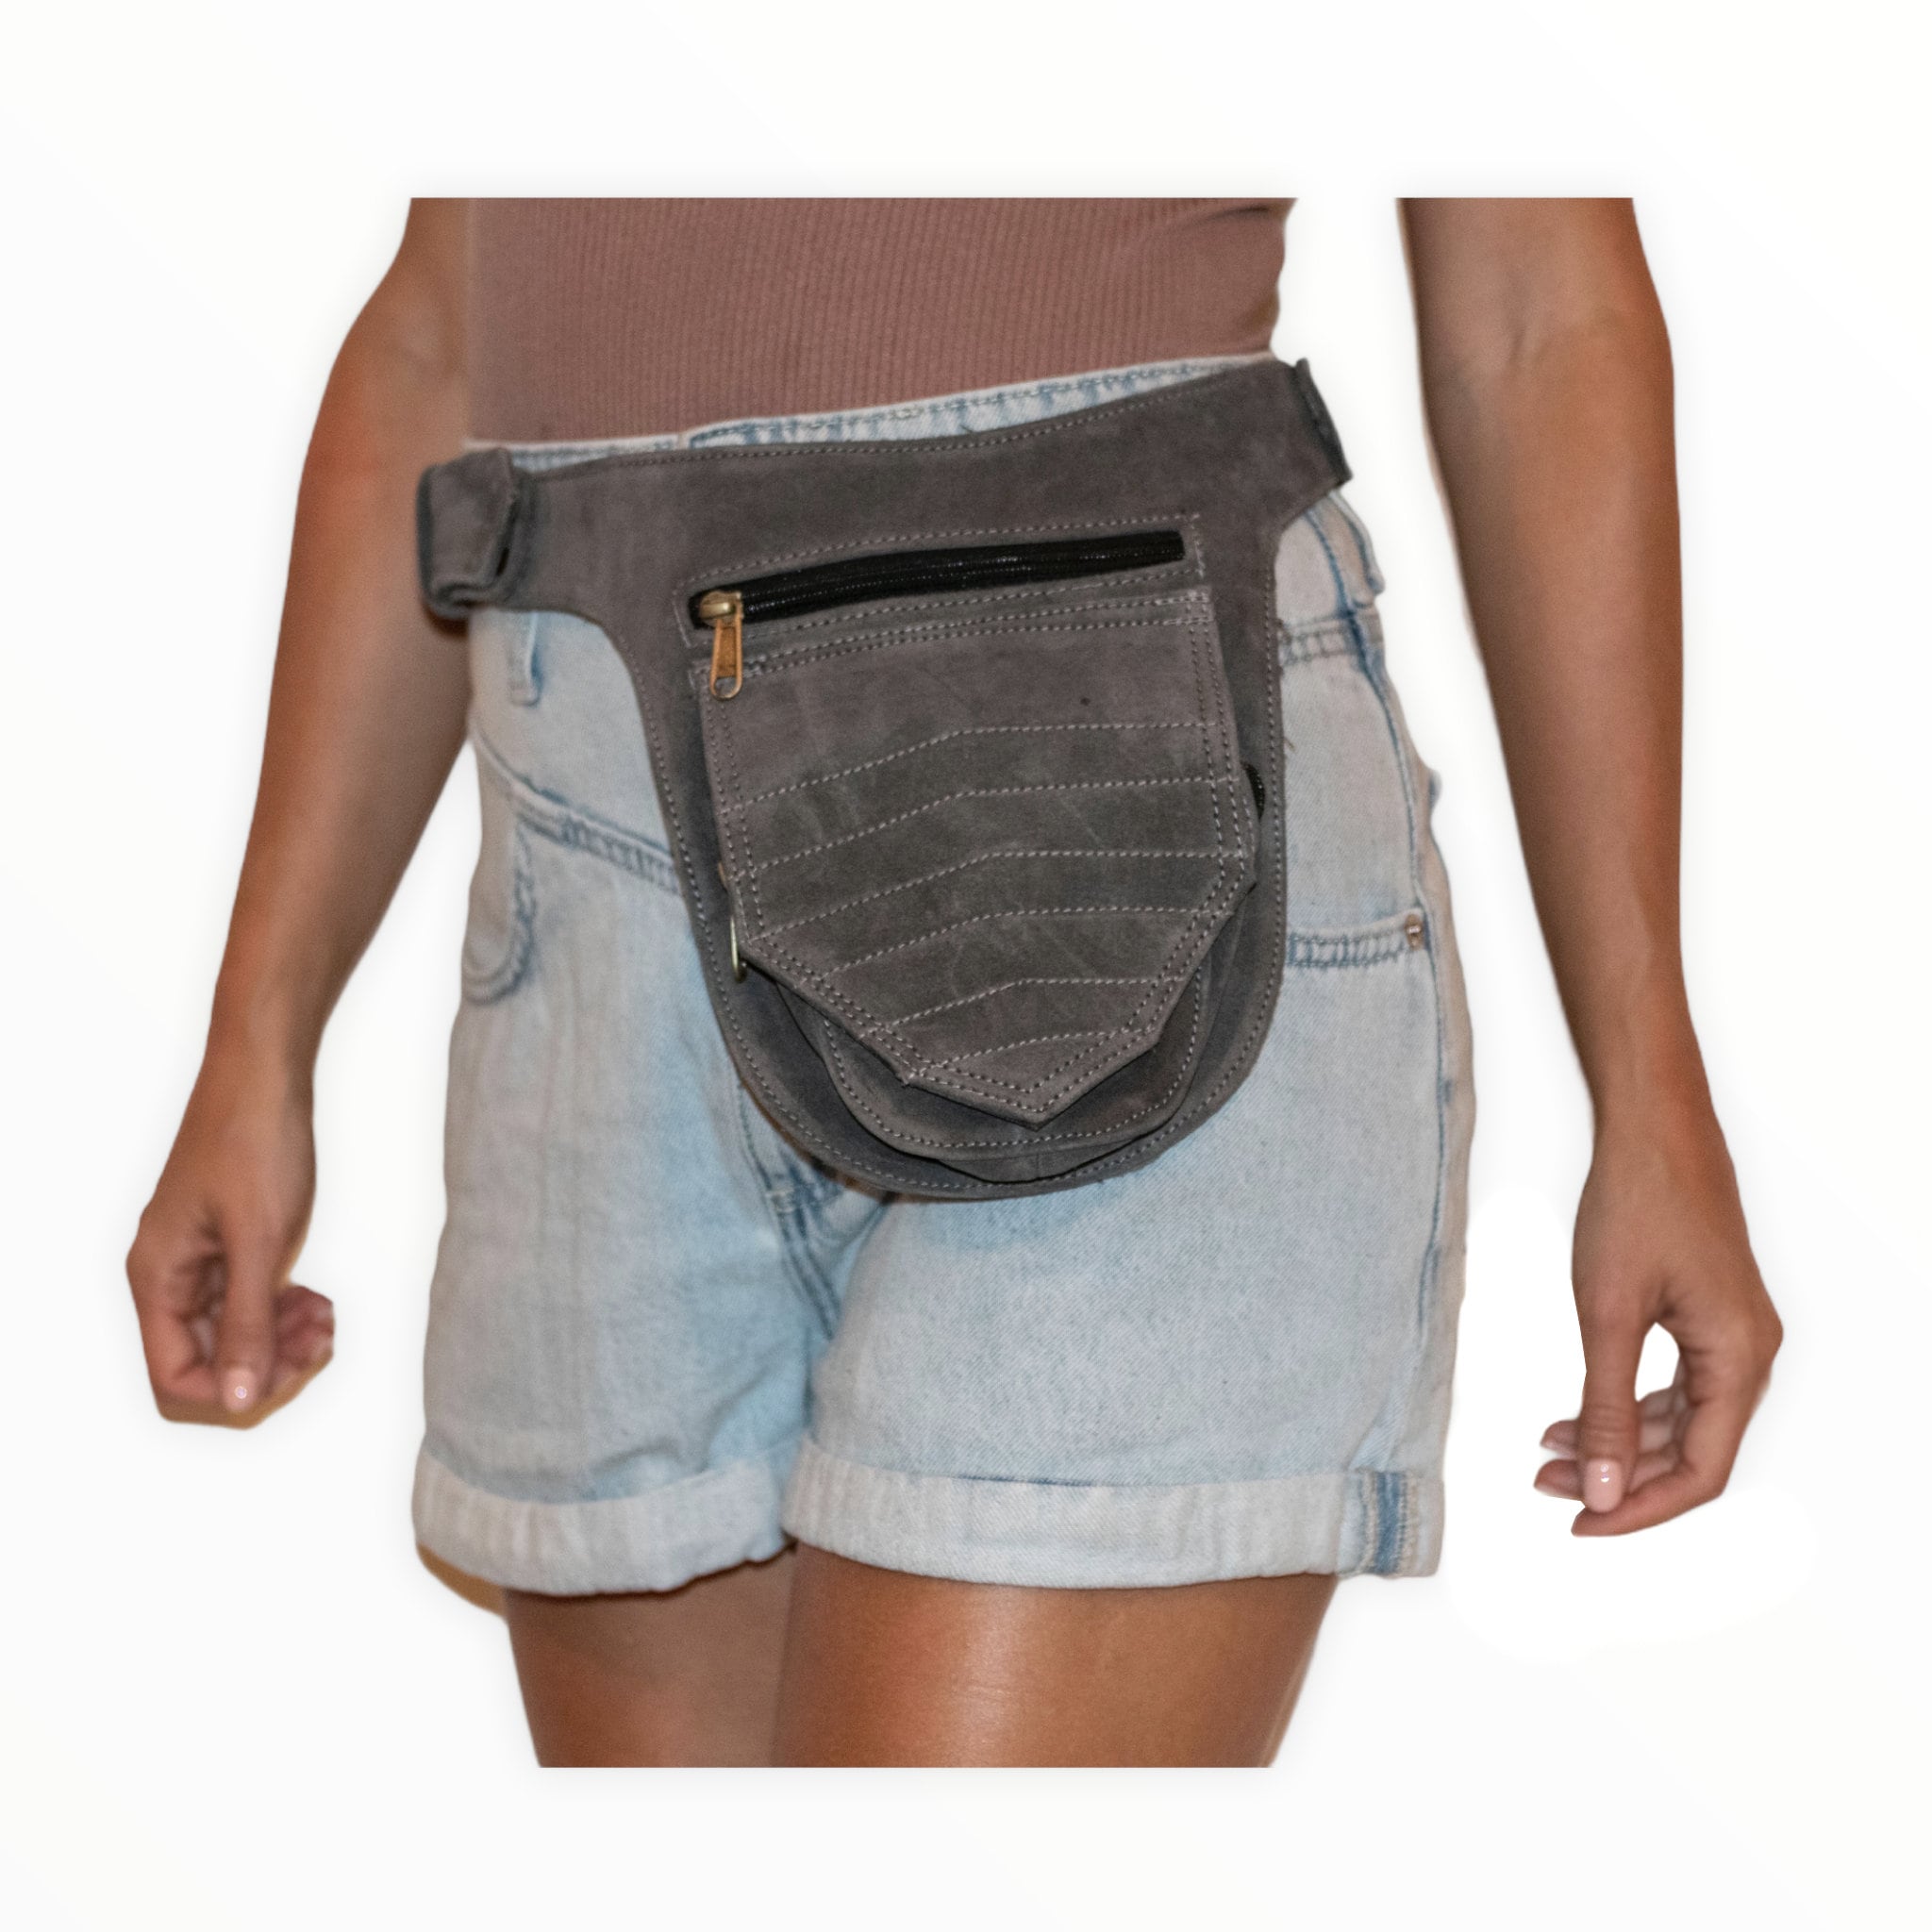 Unisex Leather Festival Pocket Belt | Grey Suede | travel belt, fanny pack, vendor belt, burning man, fair, playa wear, dog walker bag